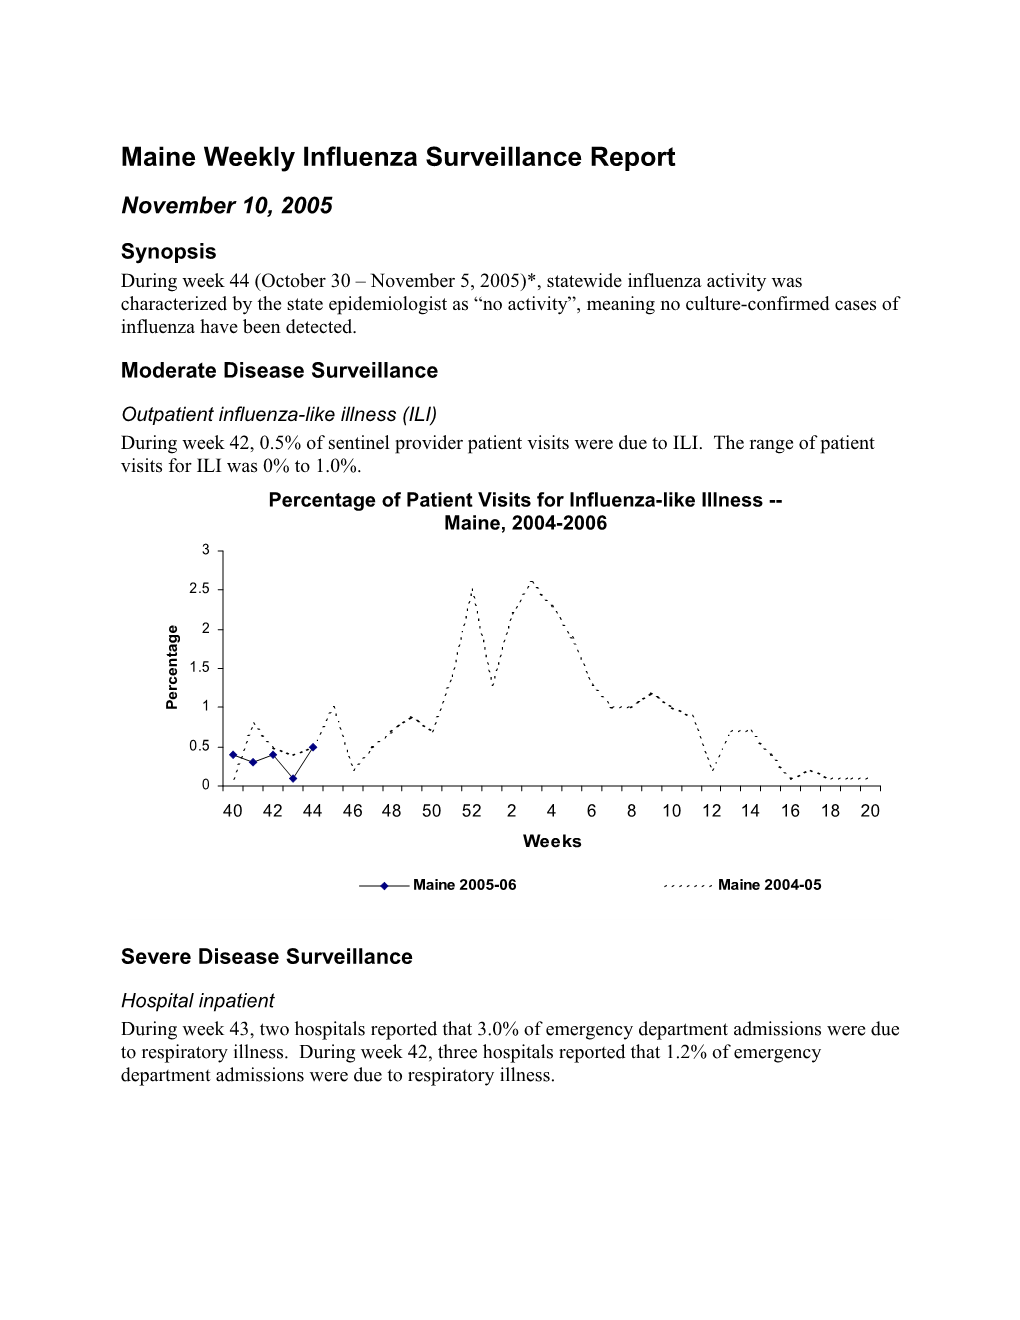 Maine Weekly Influenza Surveillance Report s2